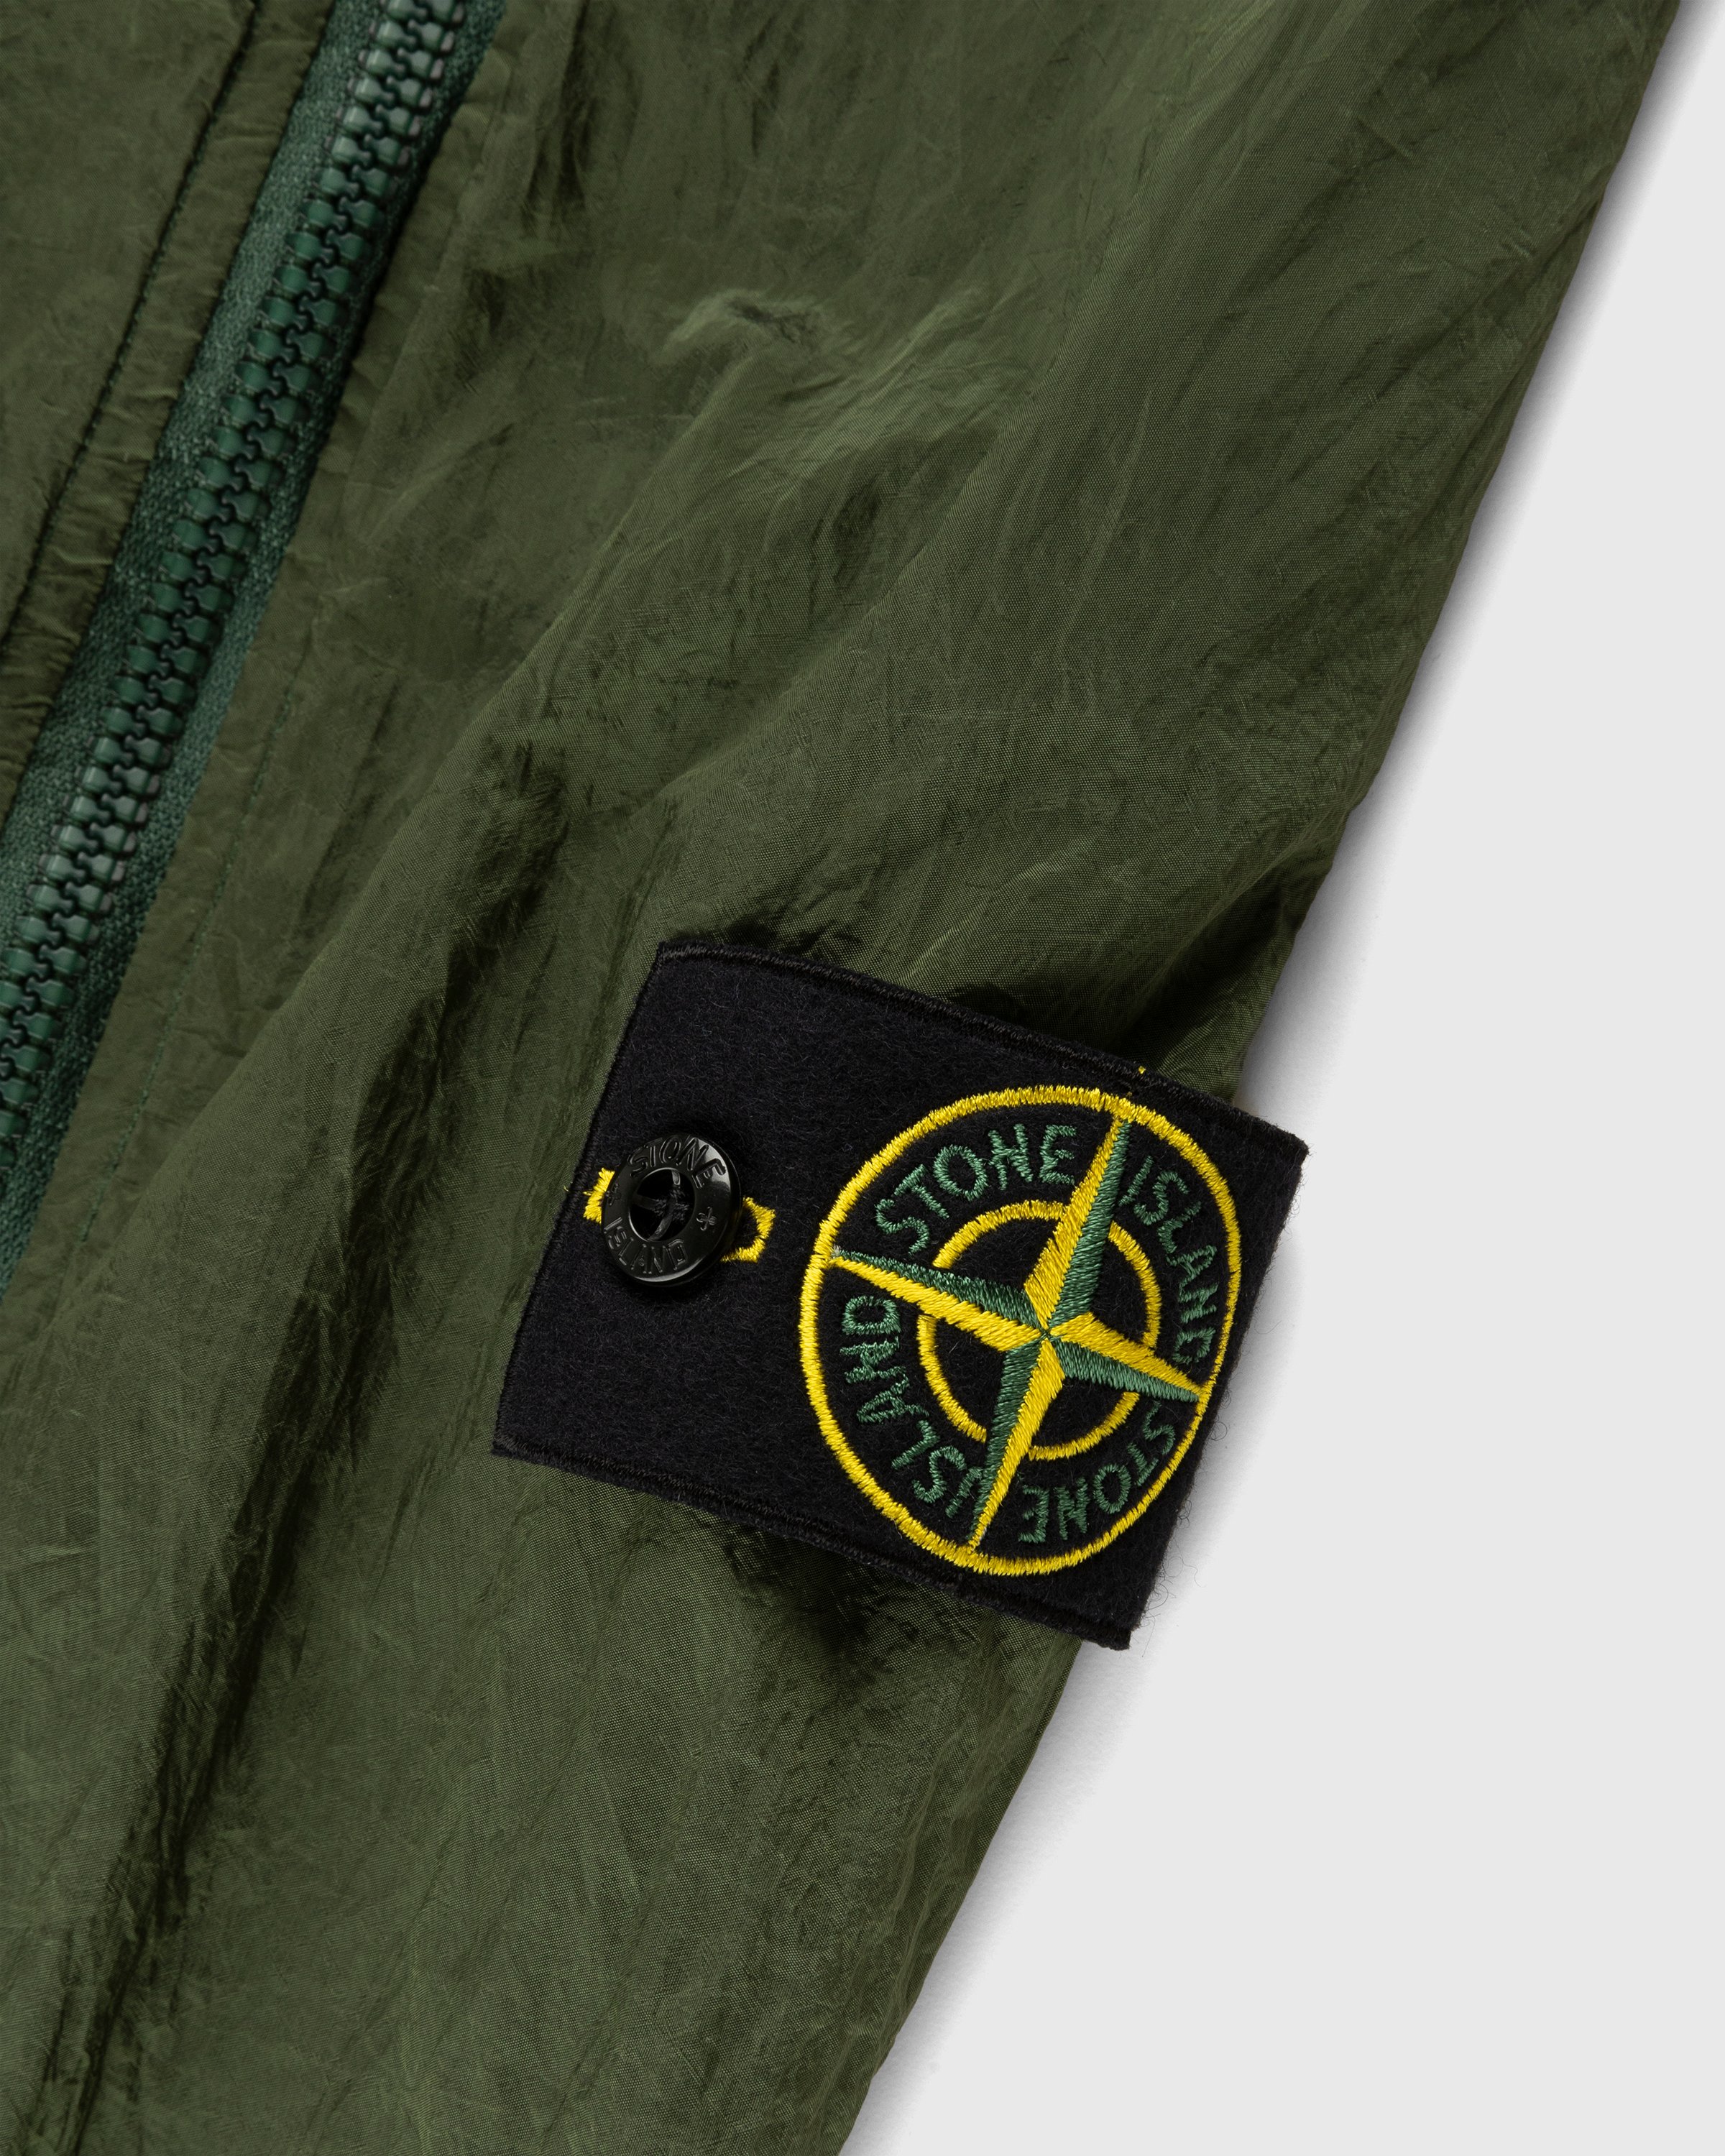 Stone Island - Nylon Metal Cargo Pants Olive - Clothing - Green - Image 6